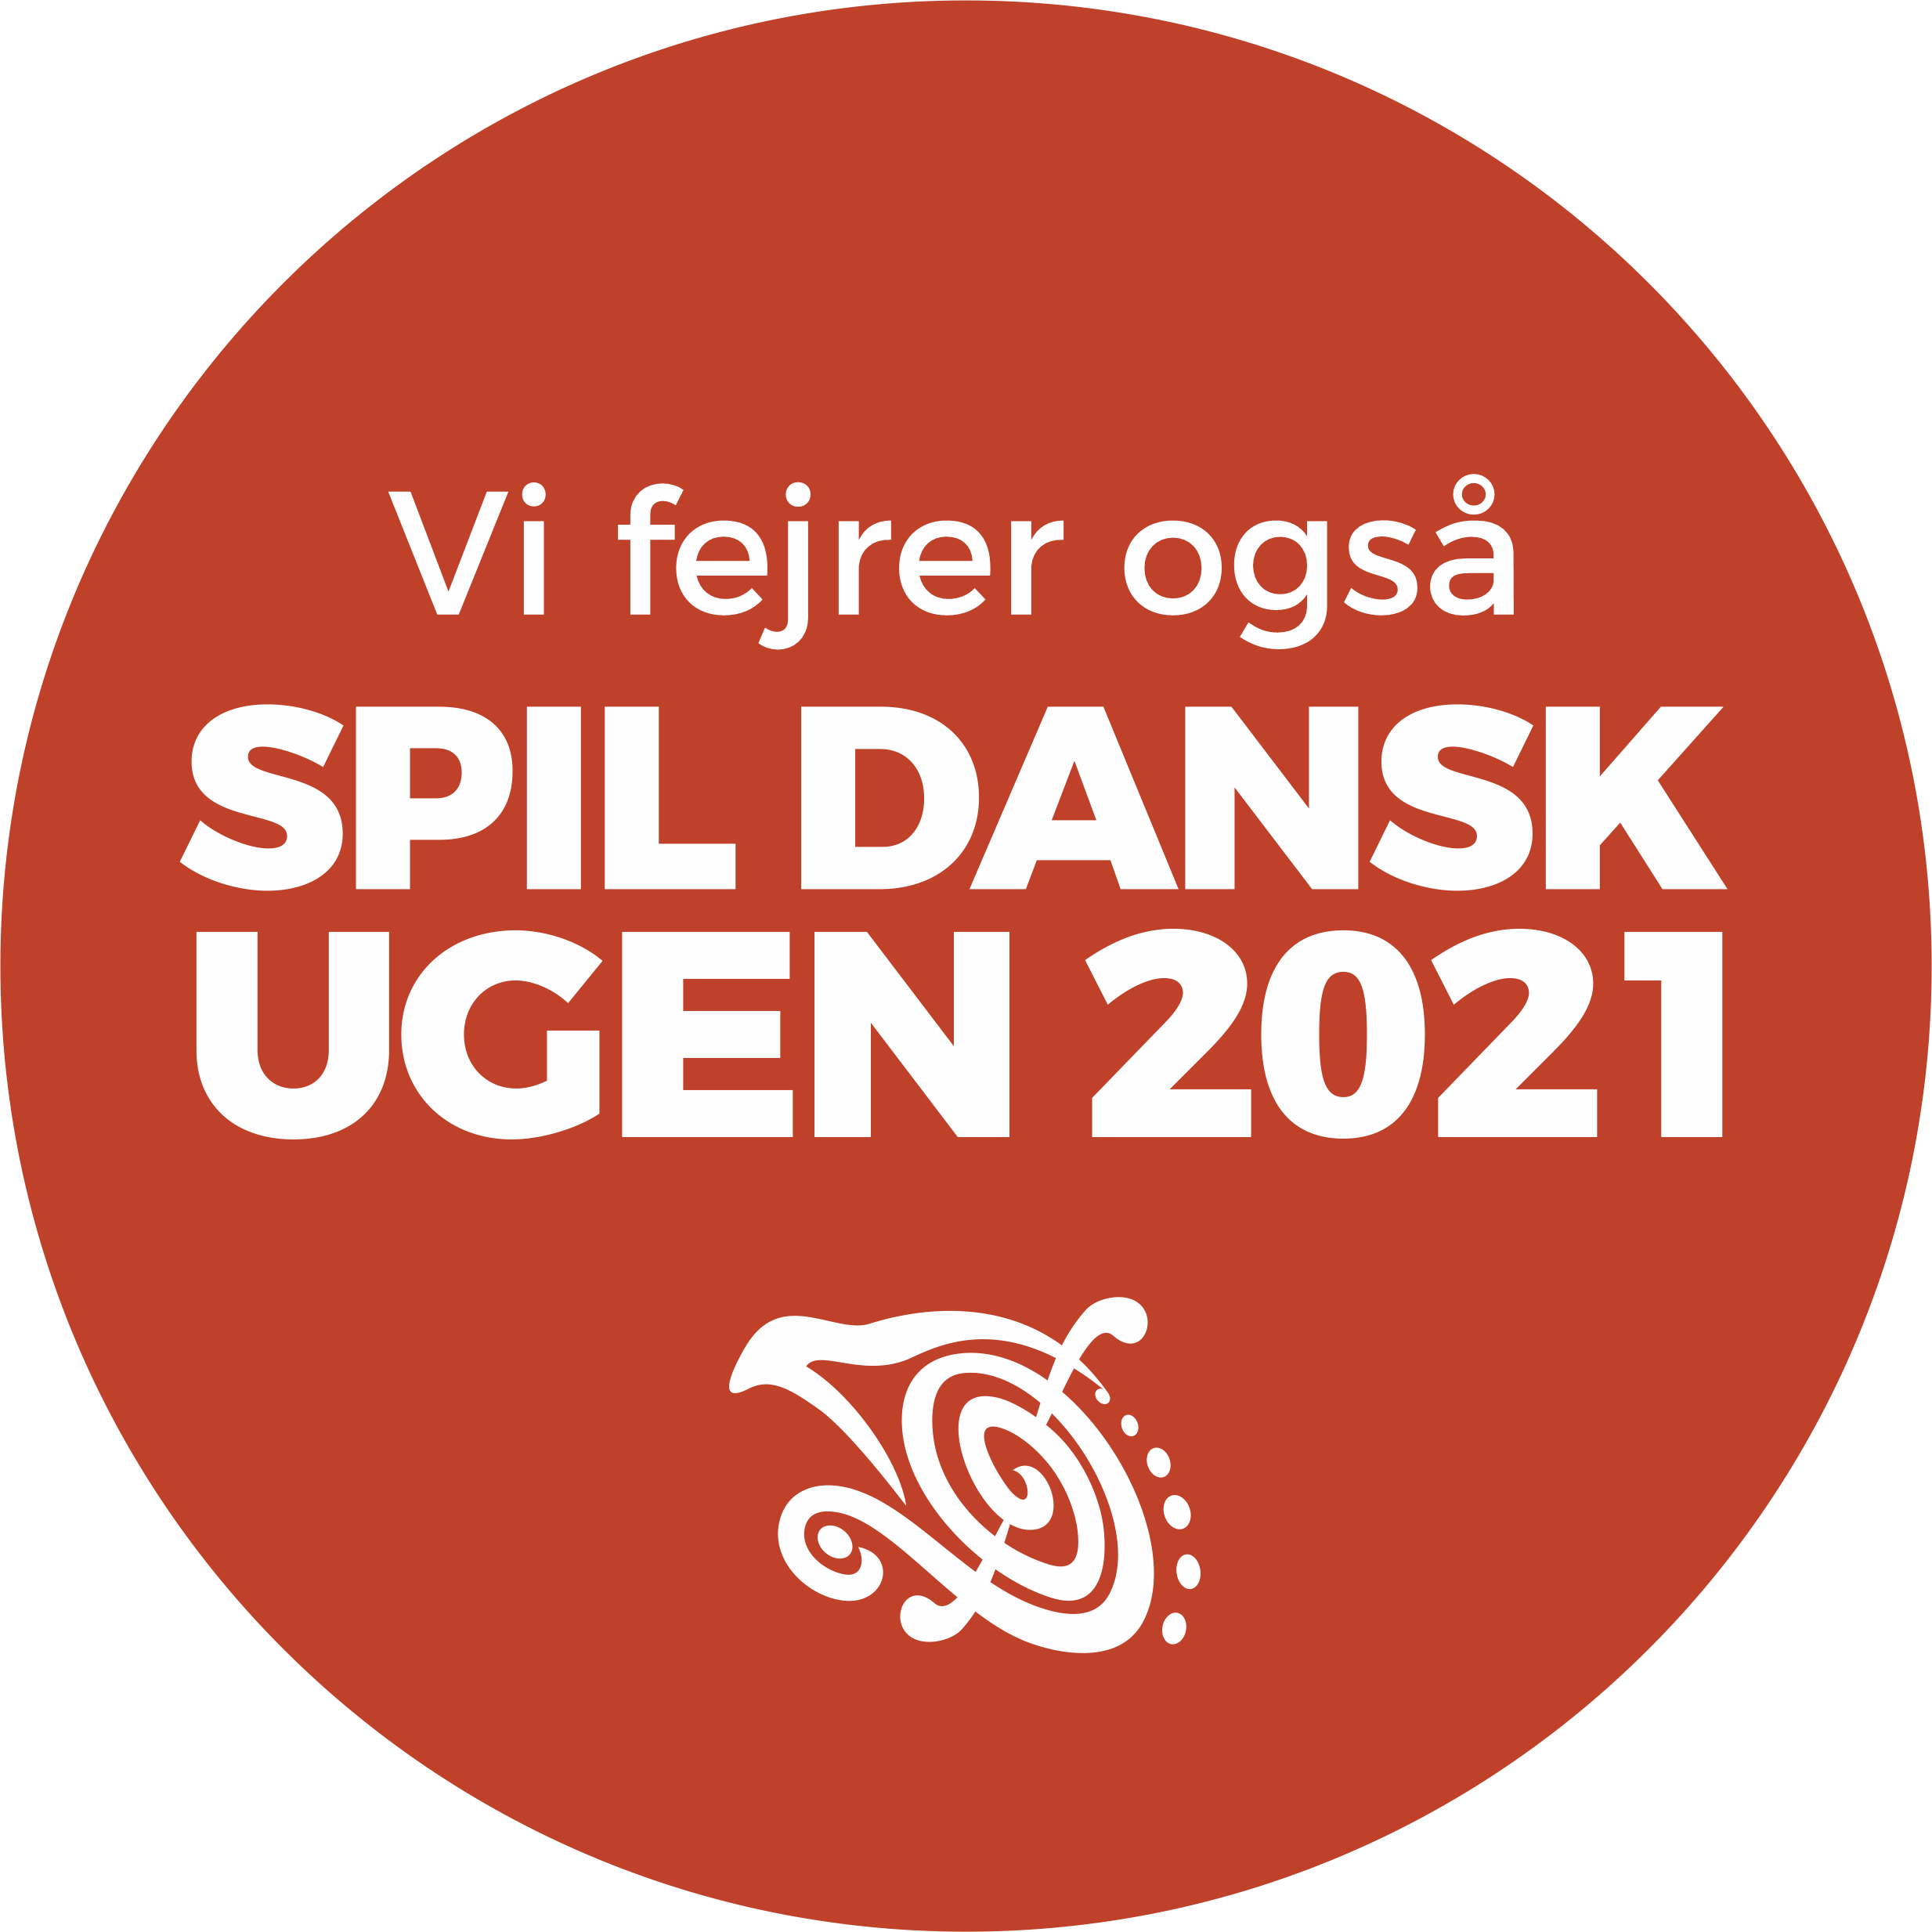 SPIL DANSK UGEN 2021 Vi fejrer ogsaa ROED